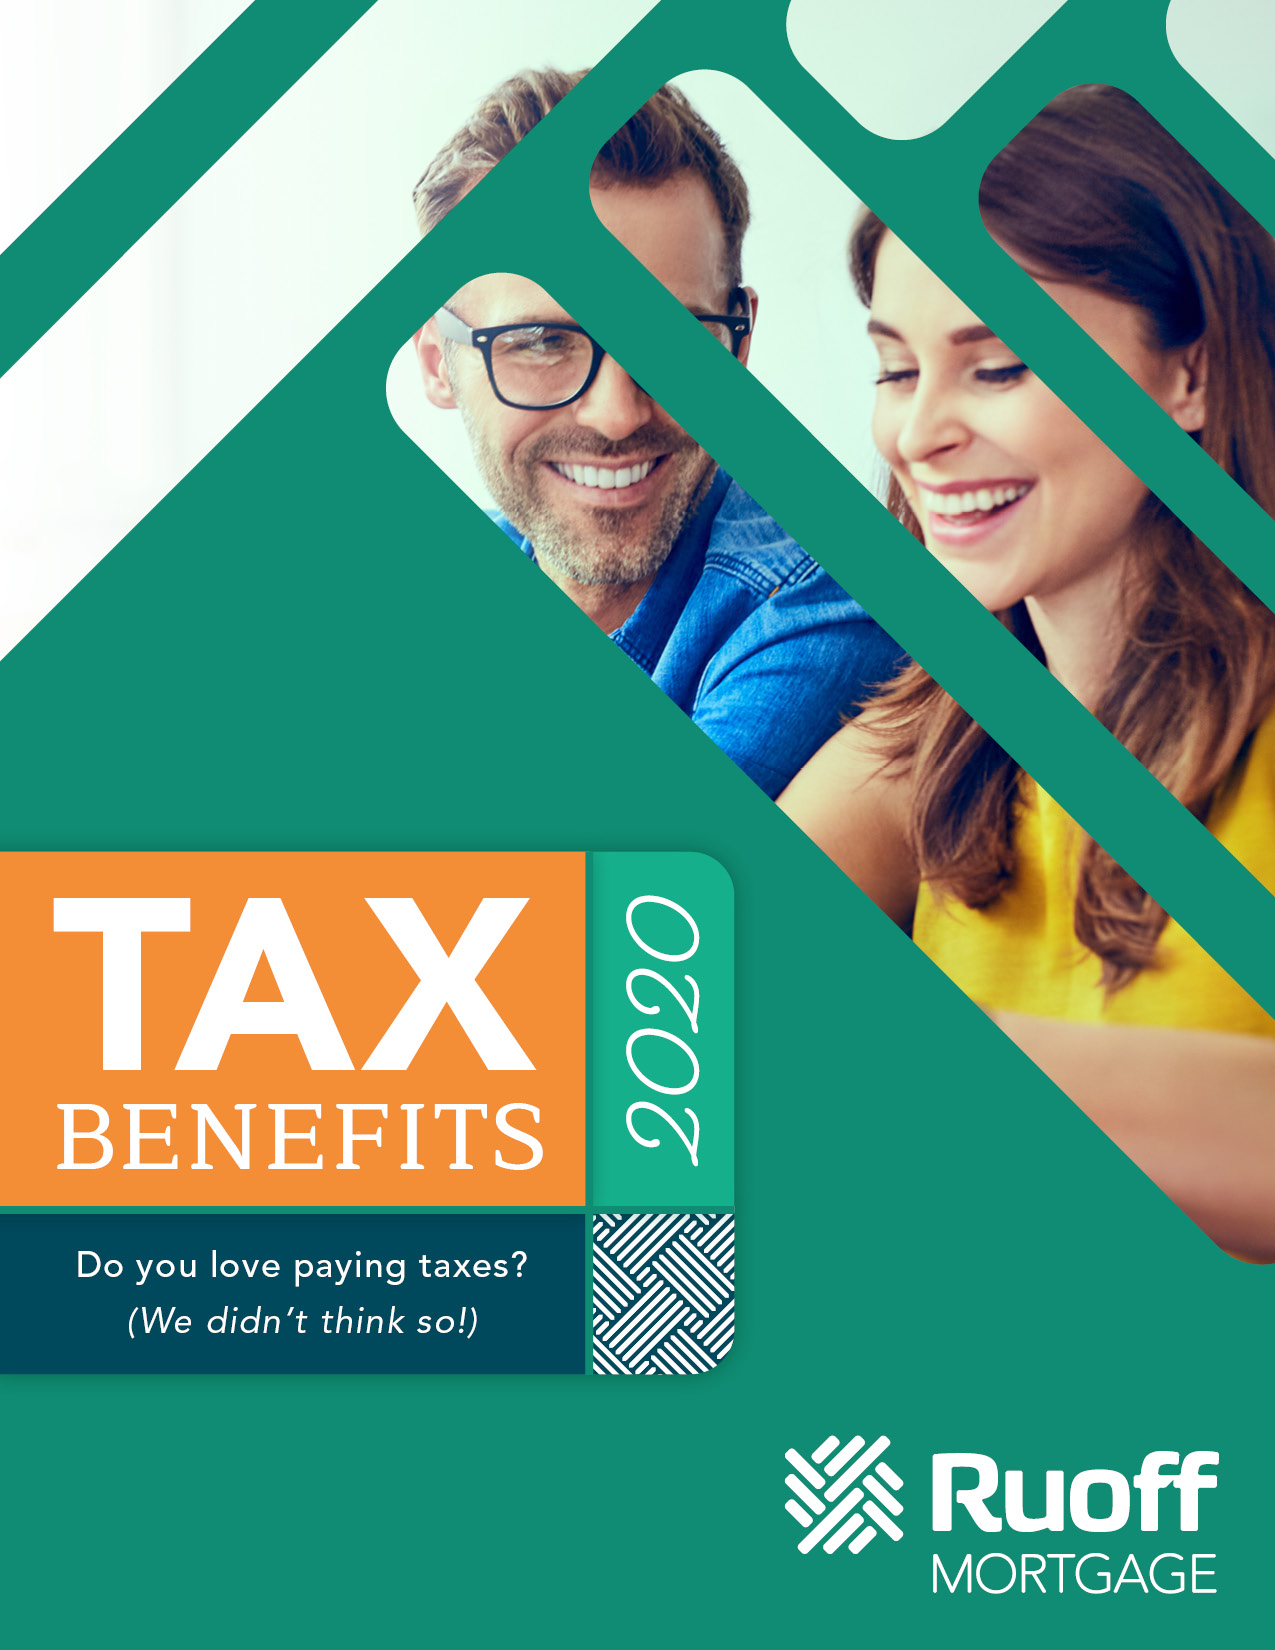 Tax_Benefits_Ruoff 2020_Rebrand